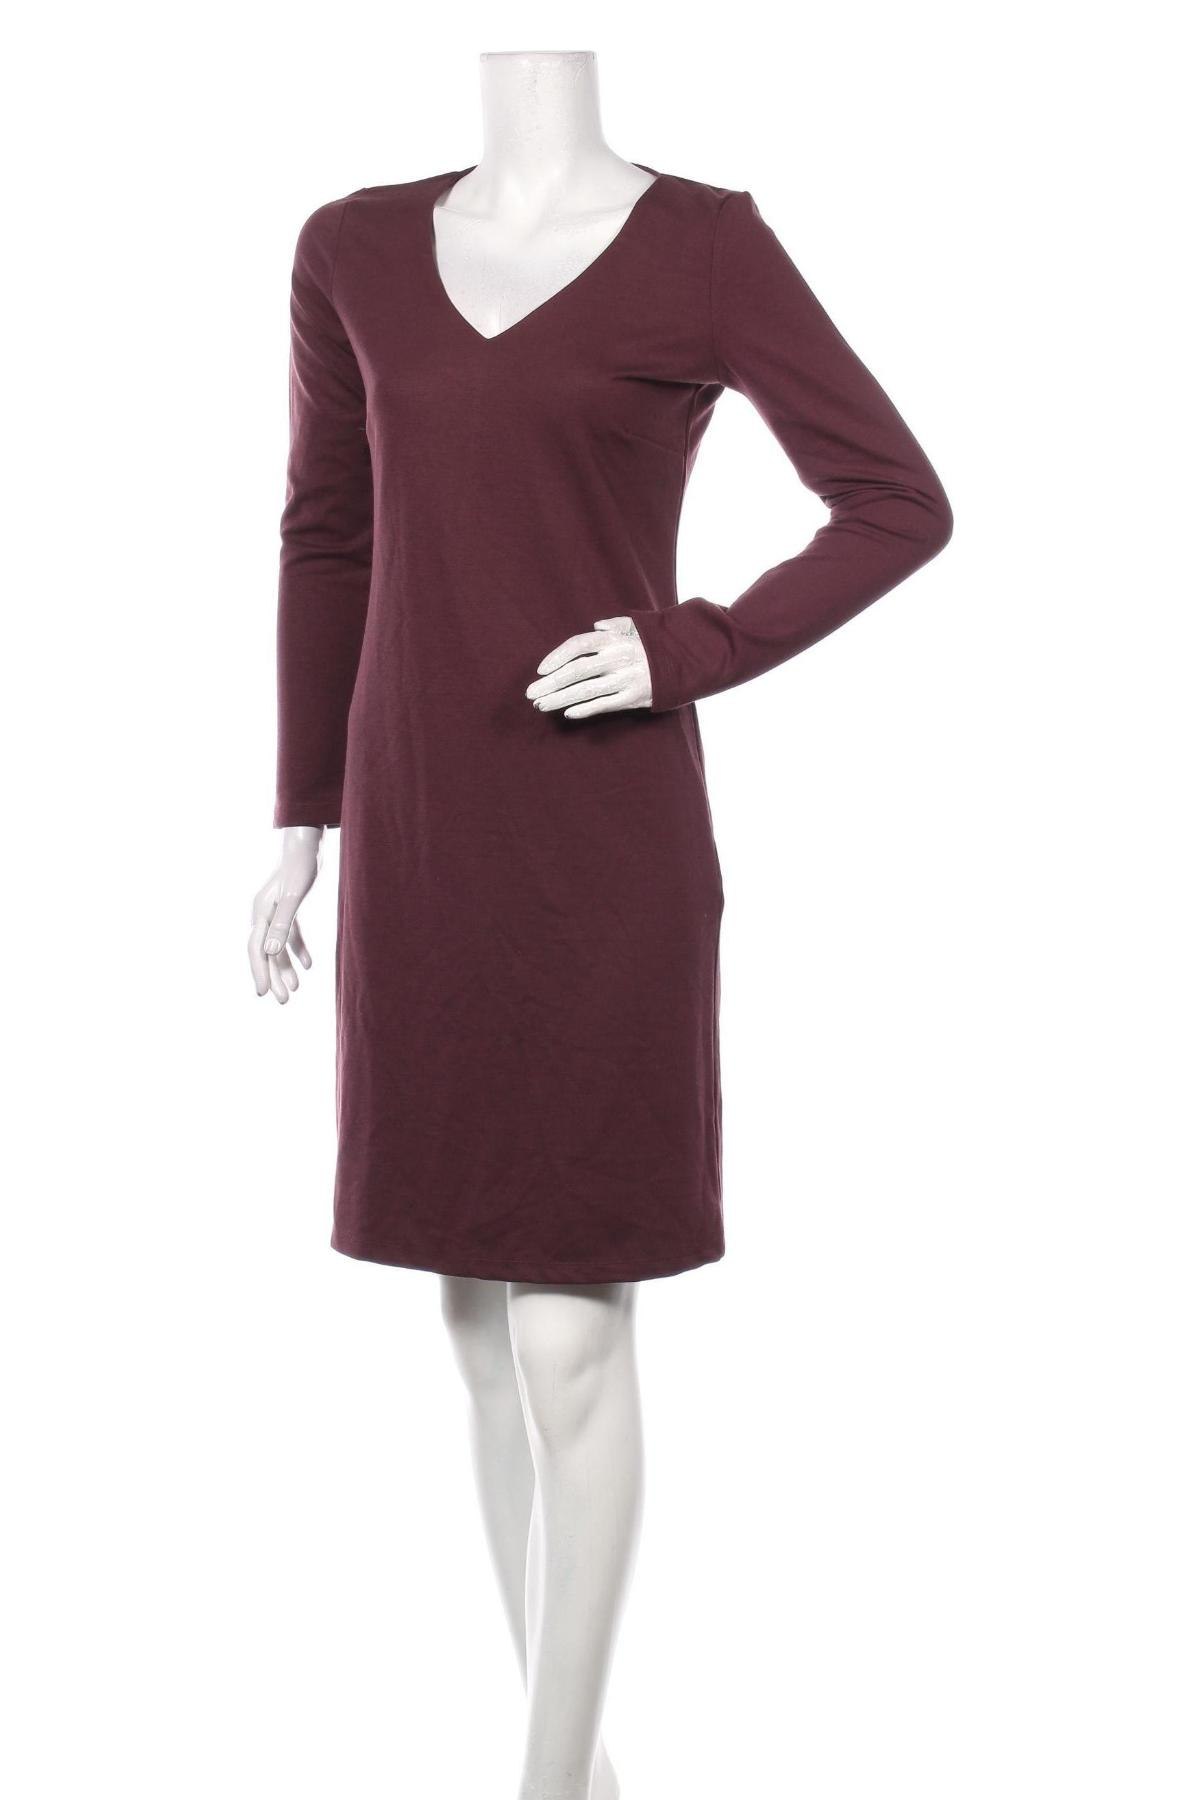 Φόρεμα Soya Concept, Μέγεθος M, Χρώμα Κόκκινο, 79% πολυεστέρας, 18% βισκόζη, 3% ελαστάνη, Τιμή 30,54 €